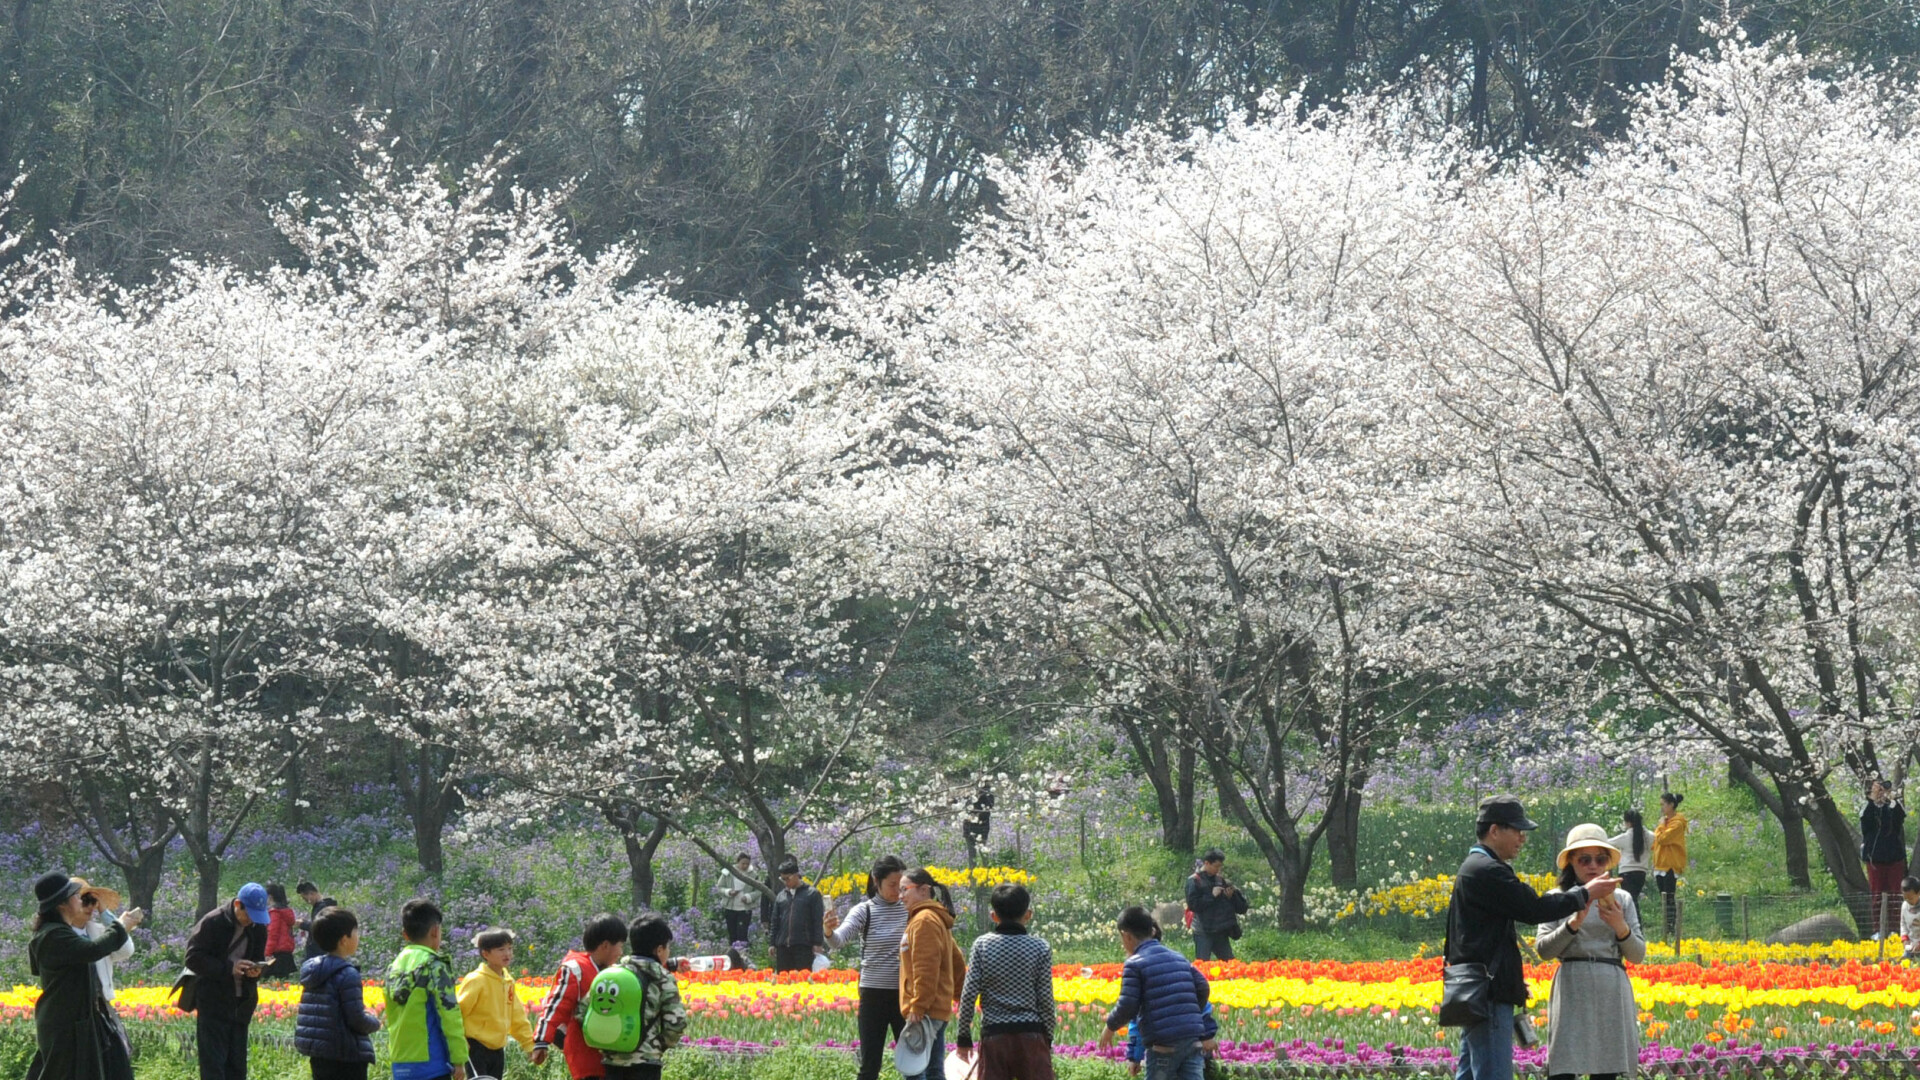 Au înflorit cireșii, în orașul chinez Suzhou. Oamenii se bucură de venirea primăverii